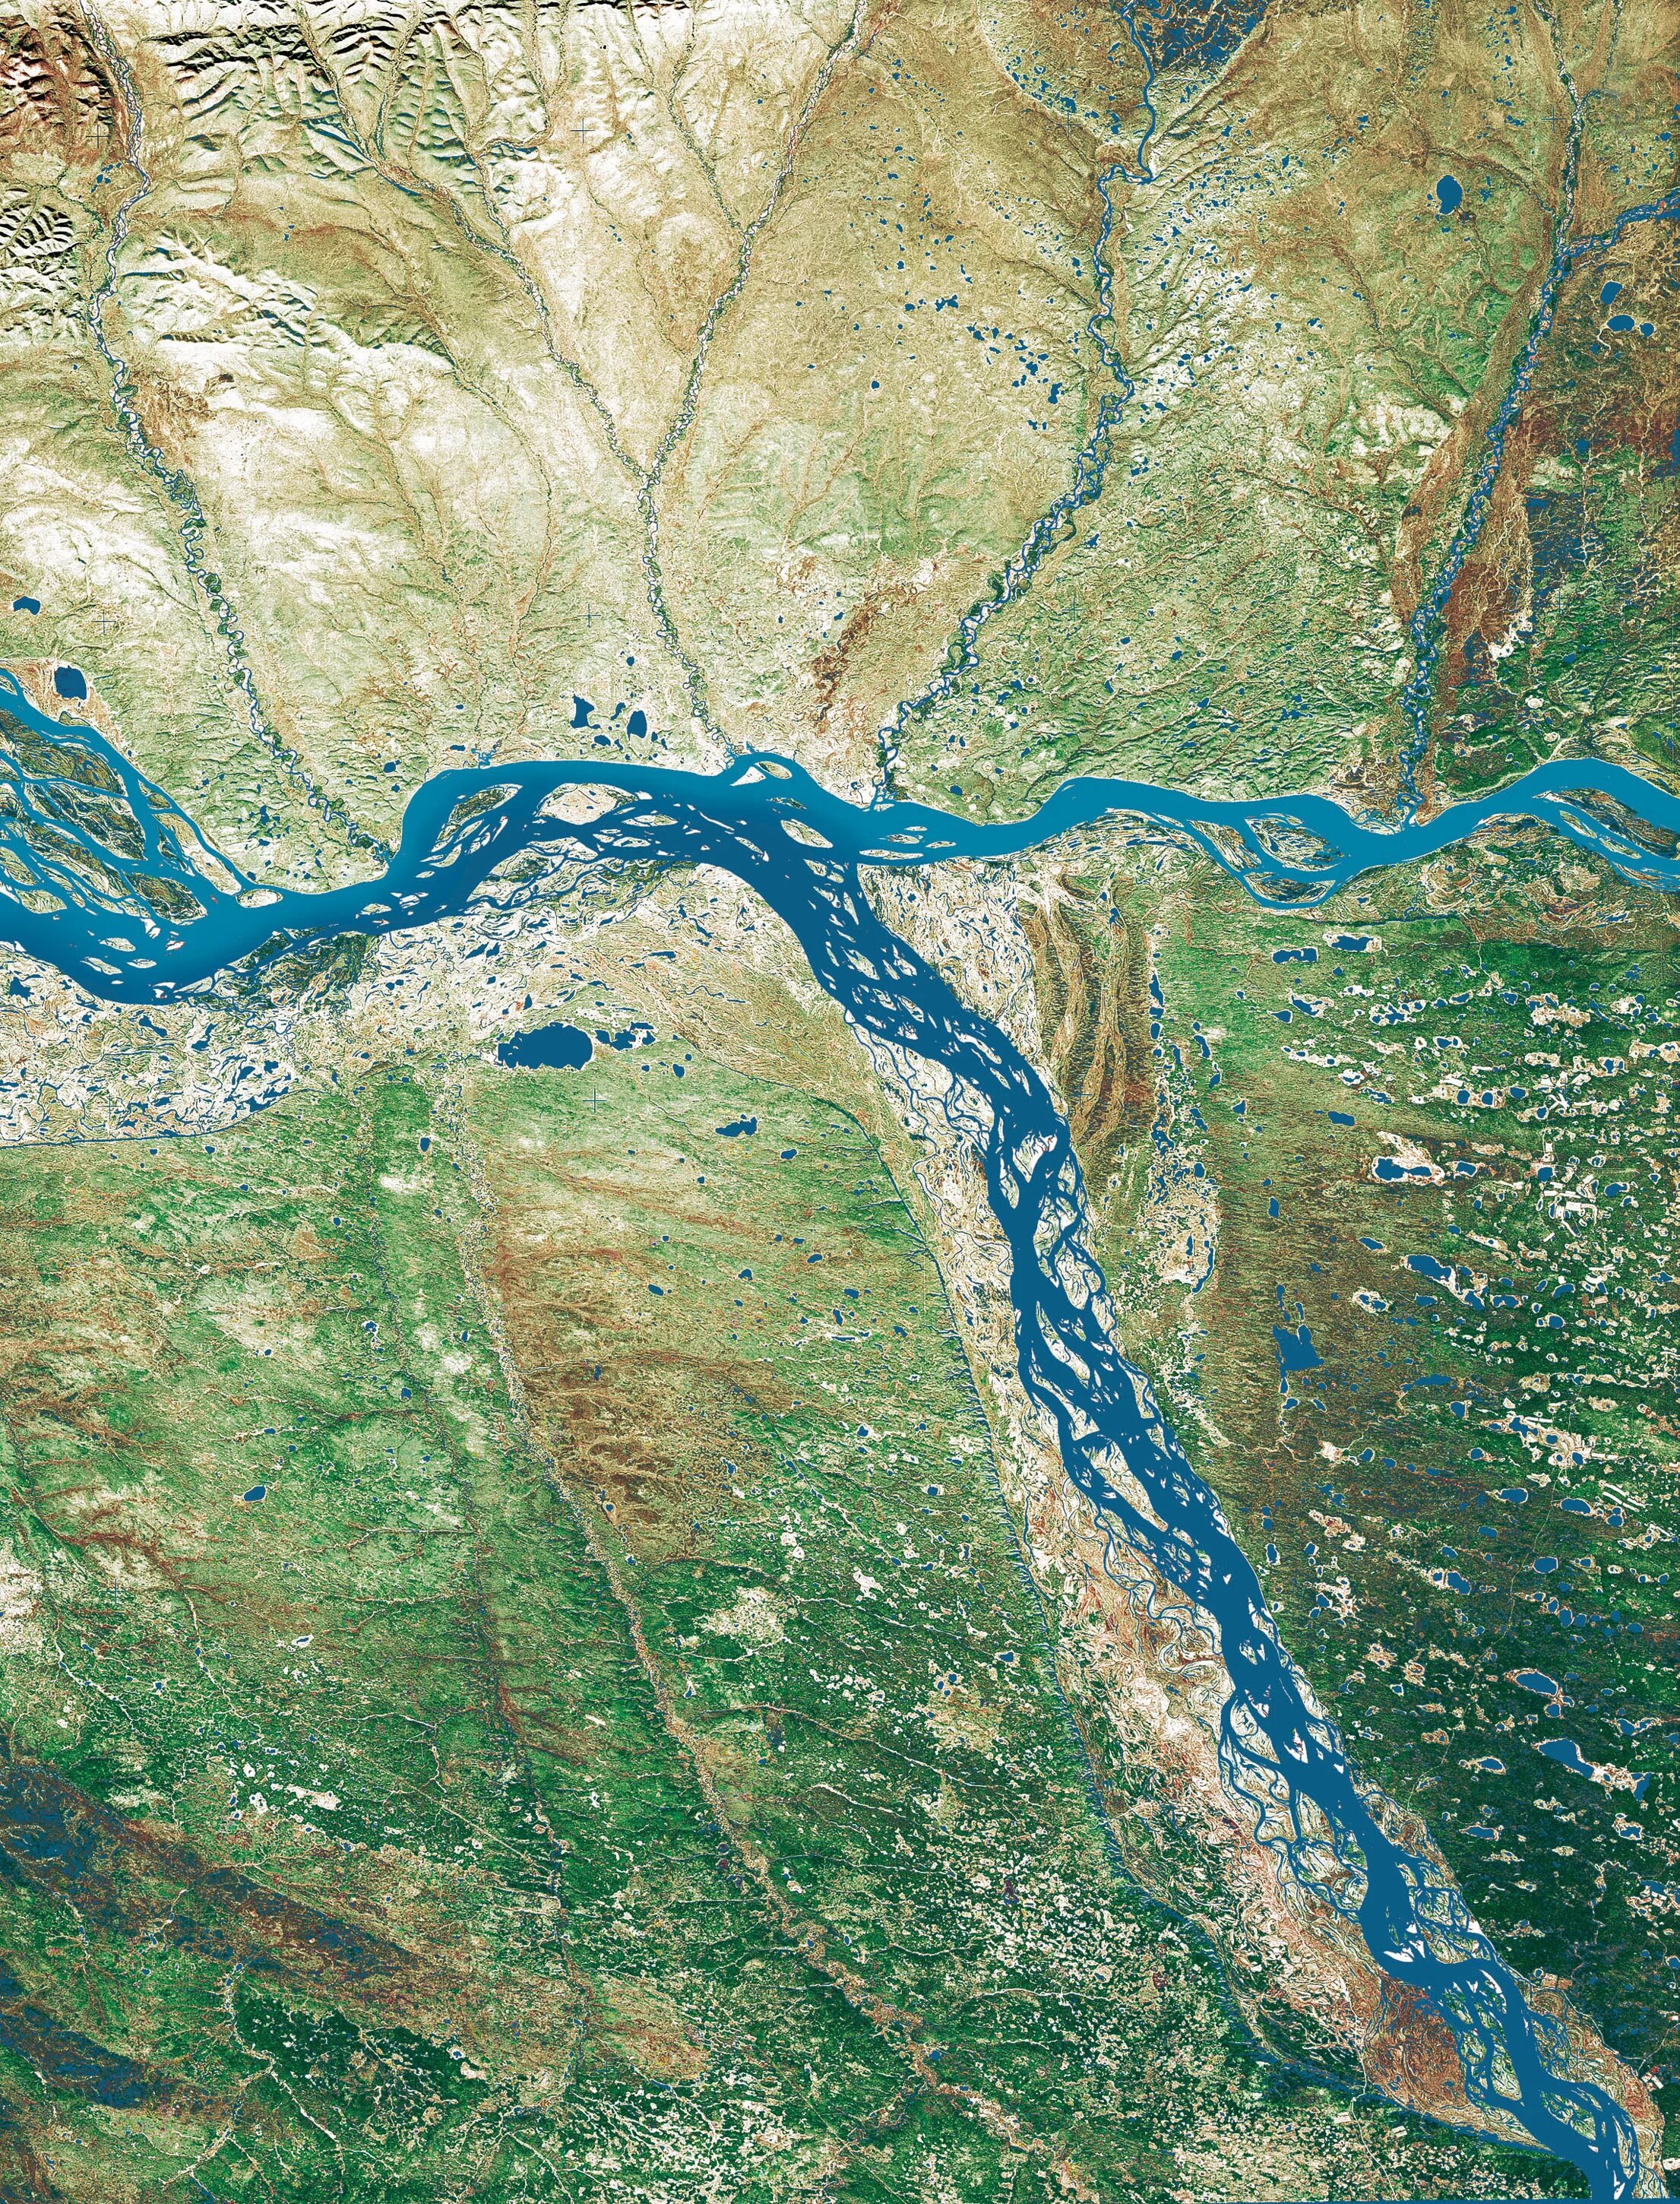 Река длиной 4400 км. Устье реки Лена. Дельта реки Енисей. Река Лена в низовьях. Дельта реки Енисей из космоса.